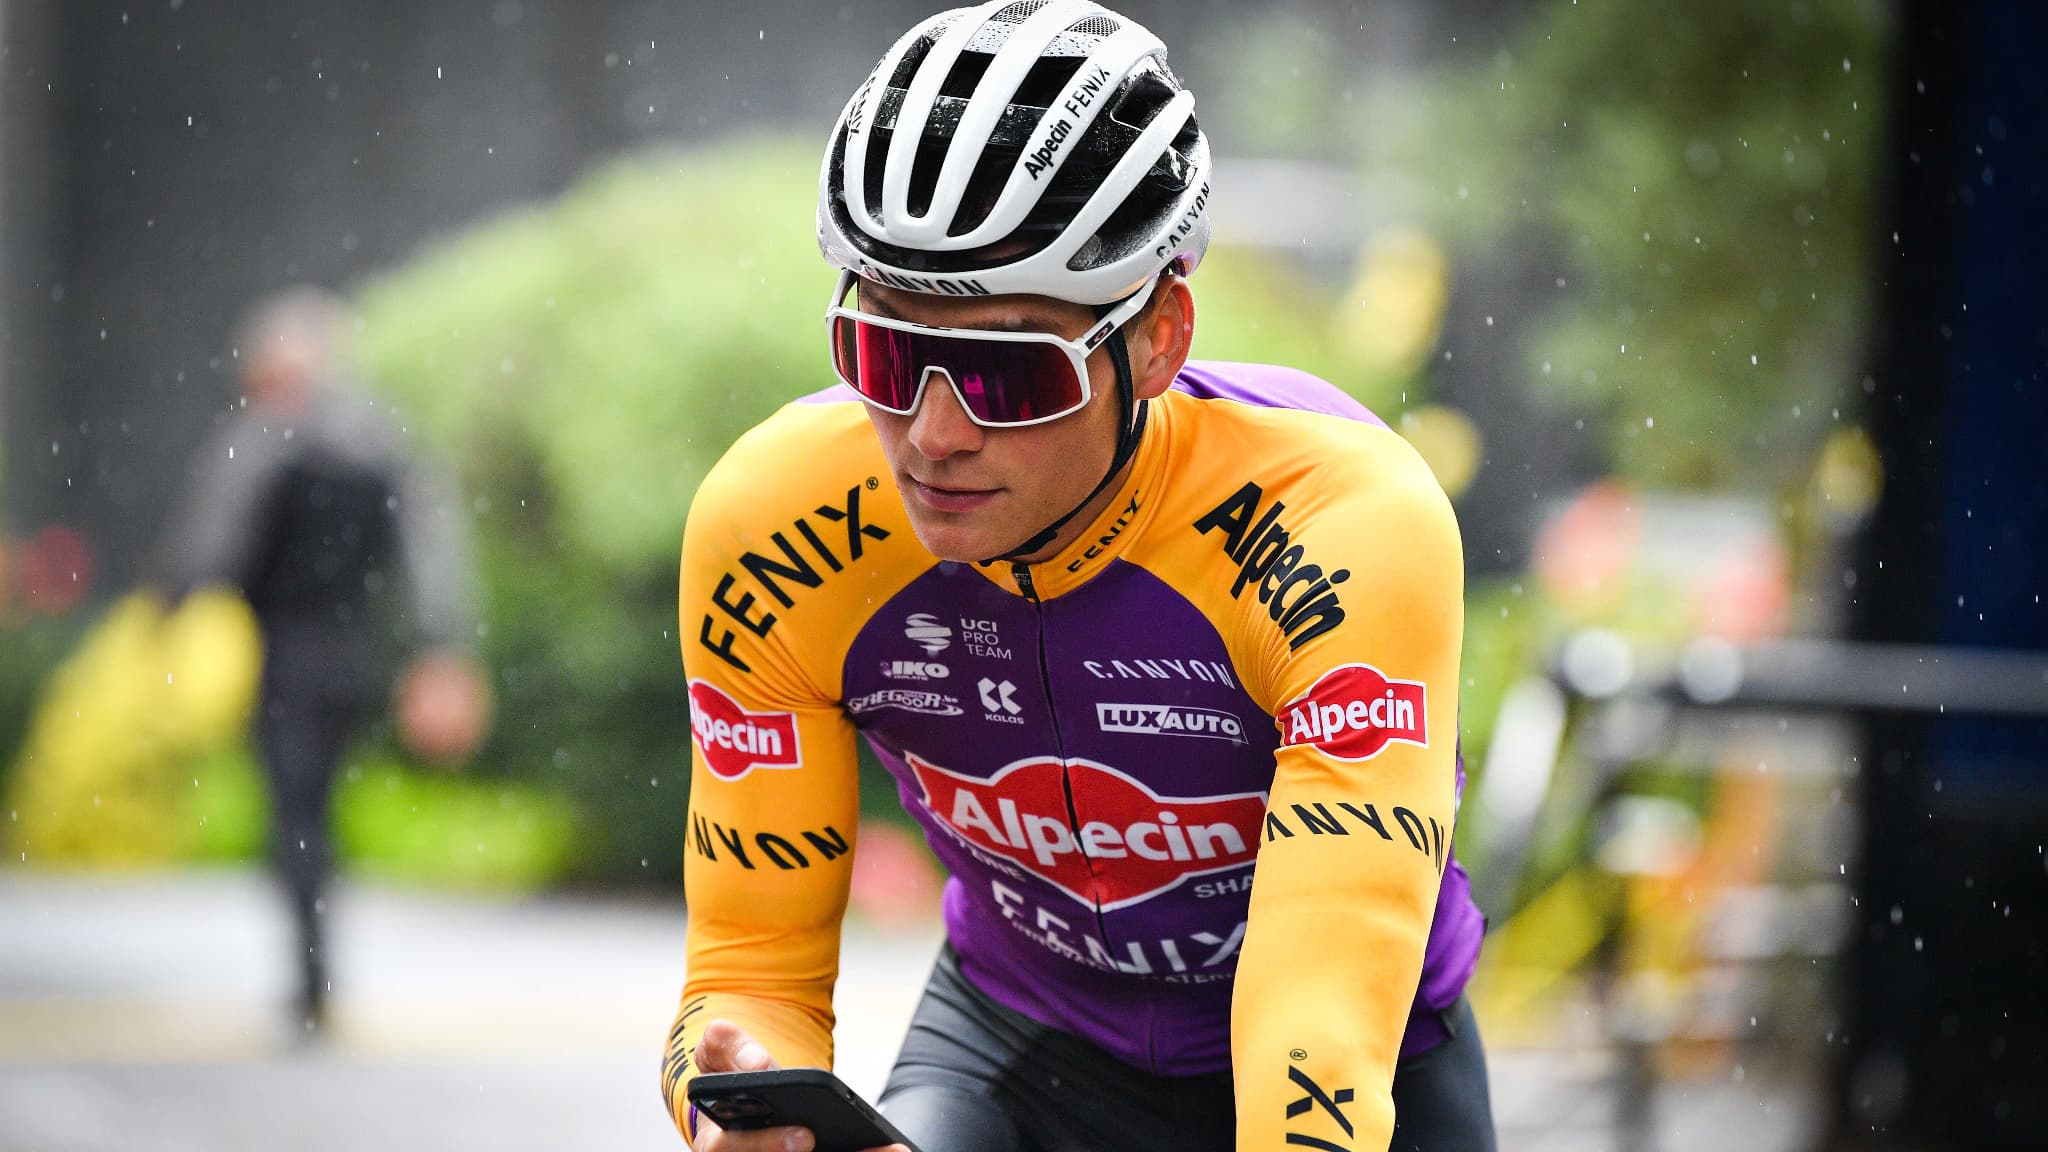 Tour de France: van der Poel will wear the jersey tribute ...